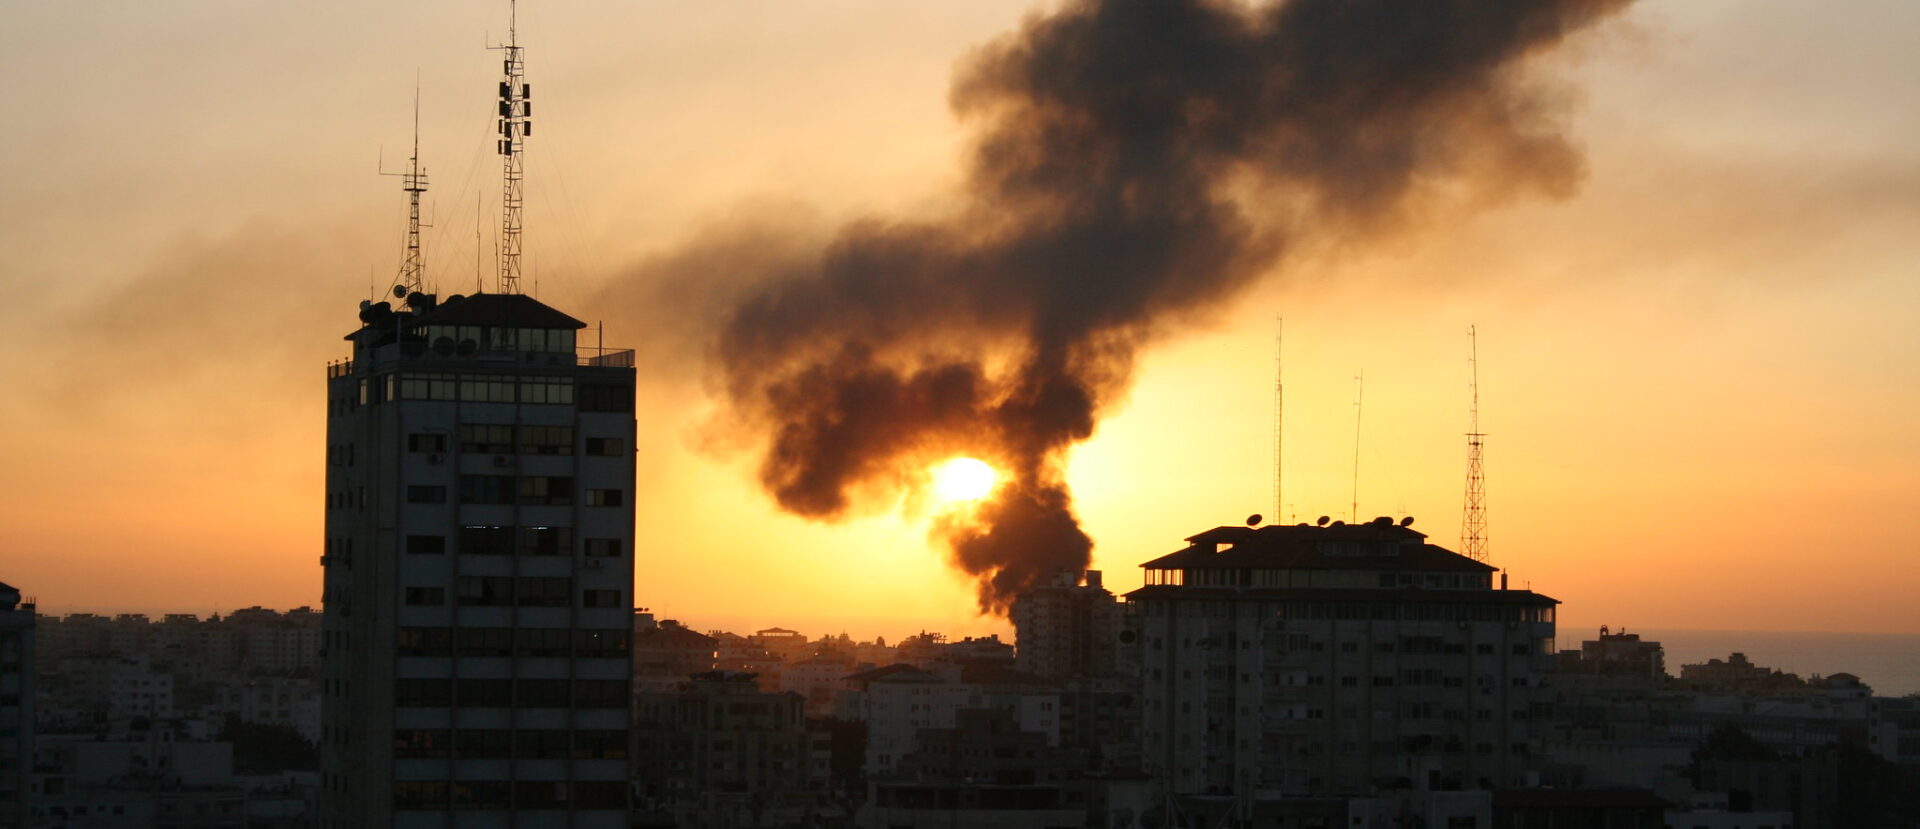 En 2023, Gaza a à nouveau subi la guerre | photo: bombardement israélien sur Gaza en 2009 © al-jazeera English/Flickr/CC BY-SA 2.0